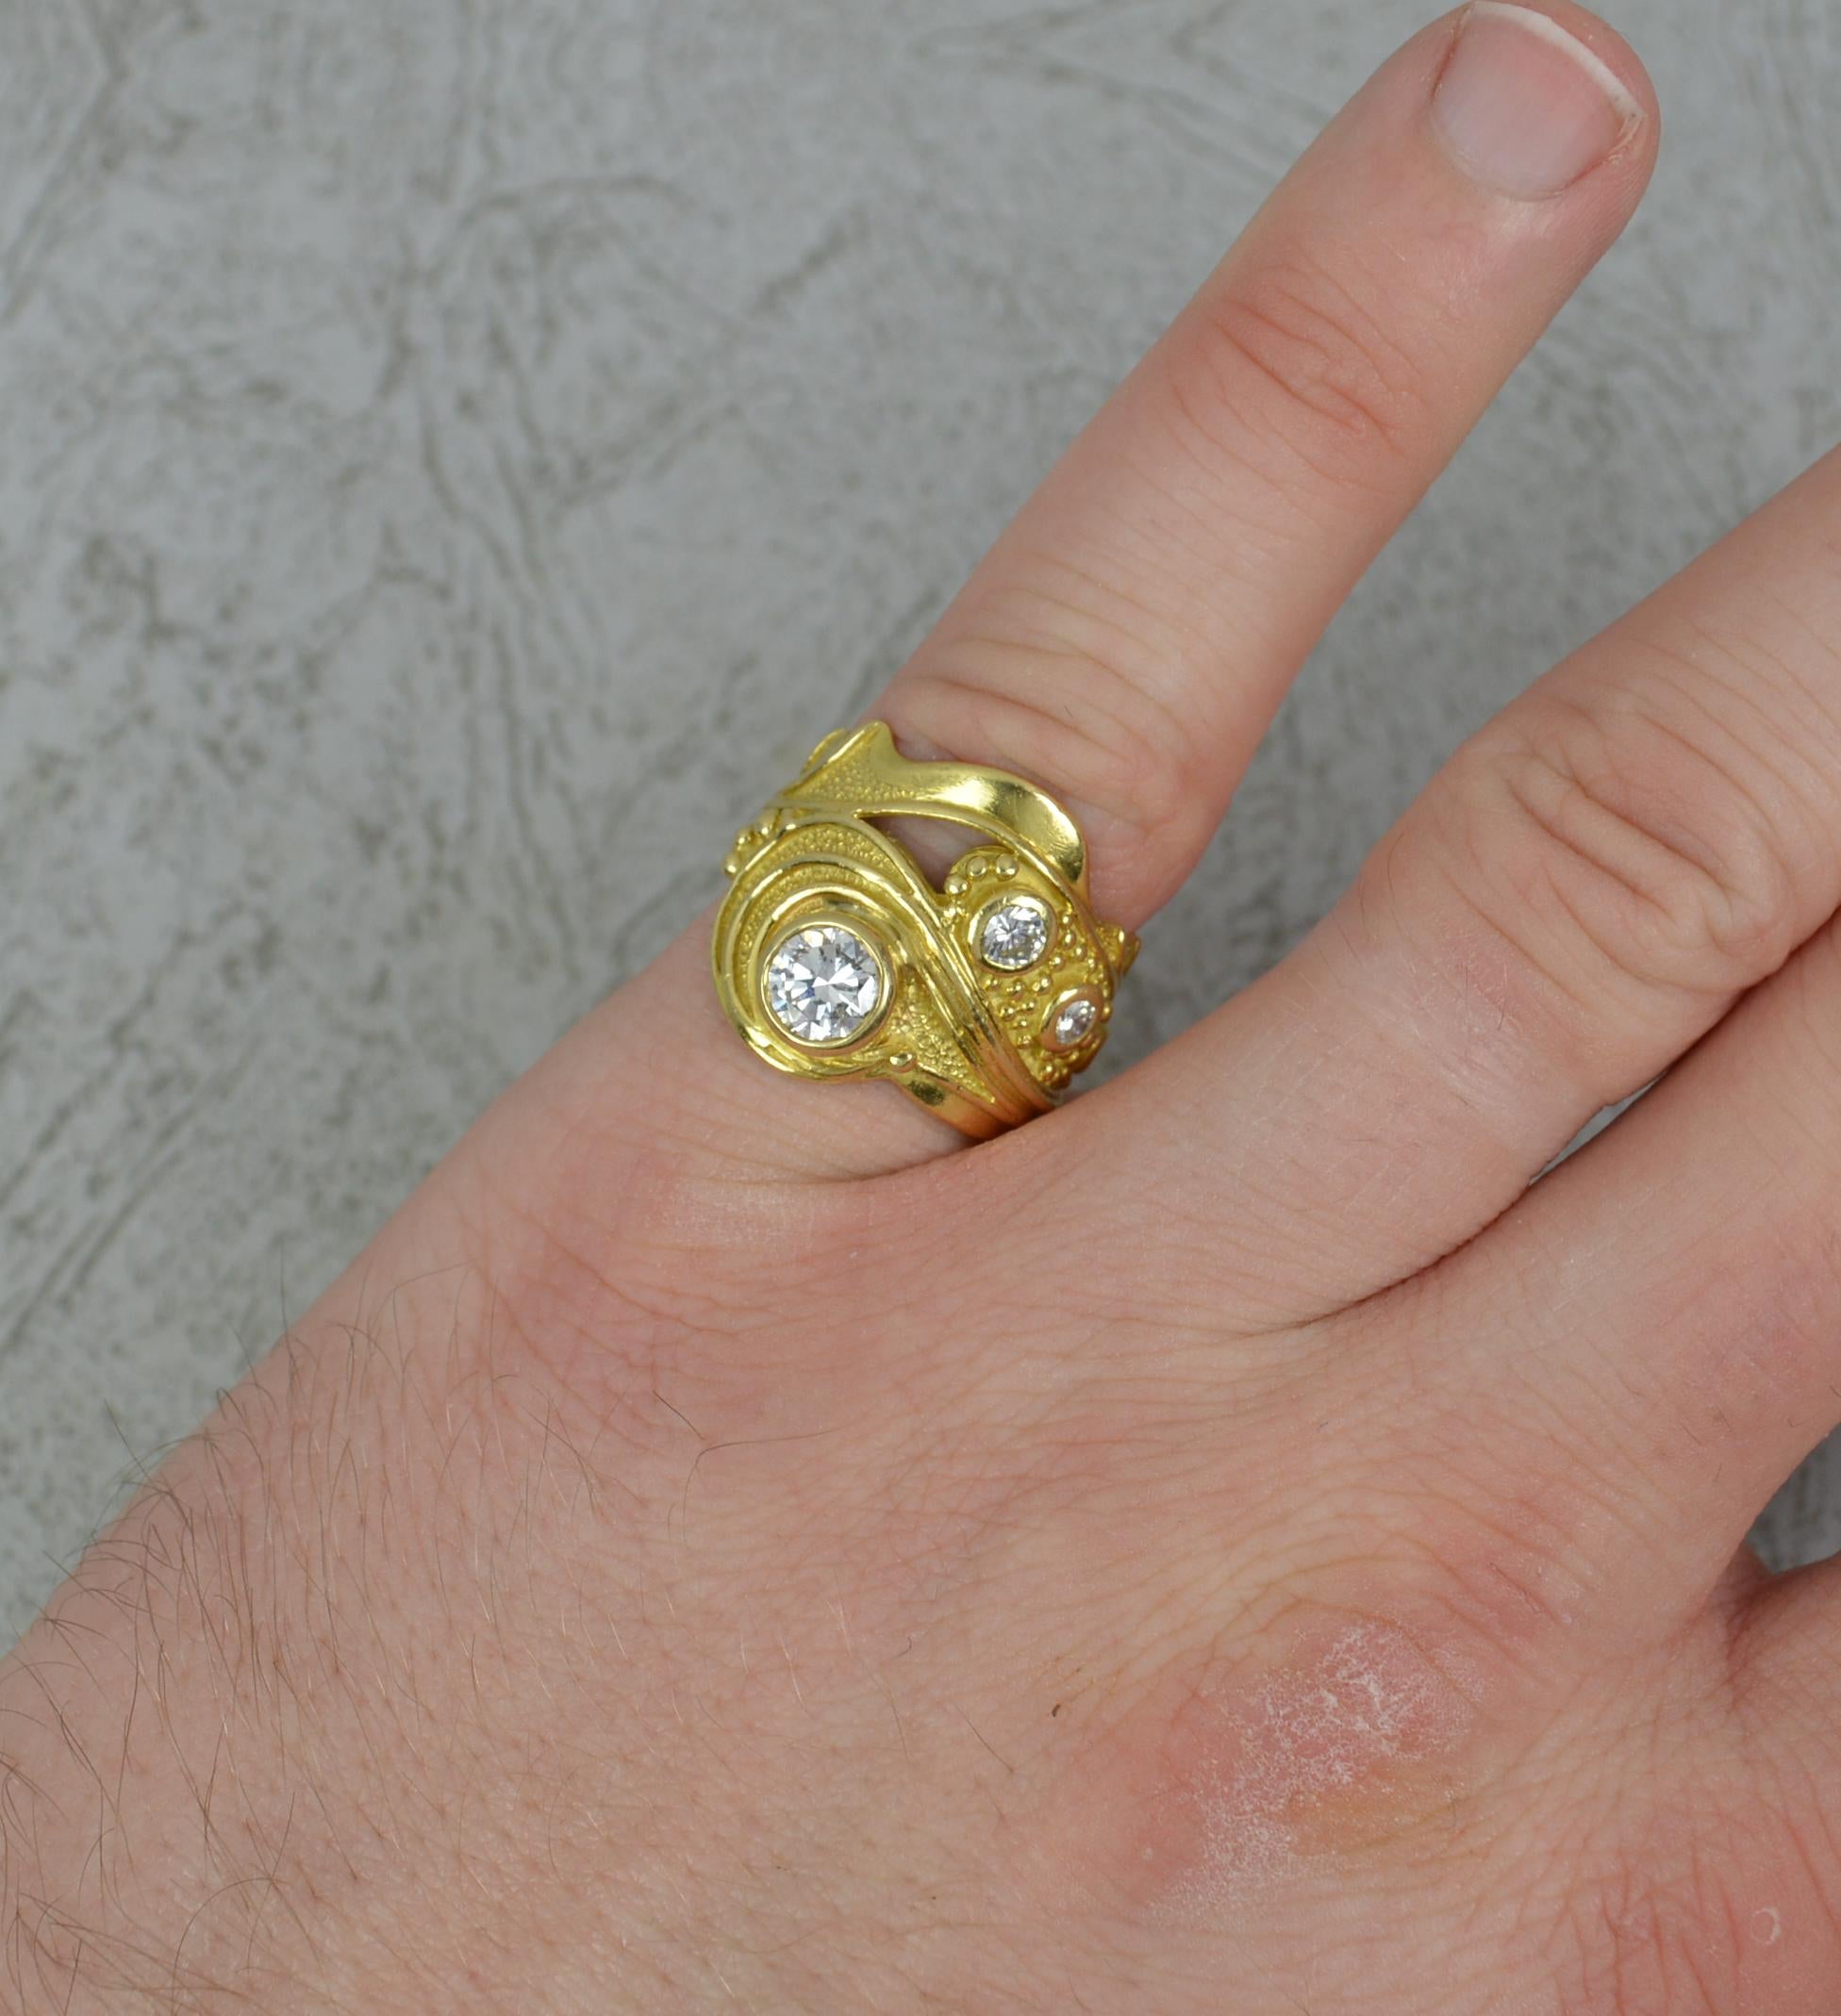 Ein ziemlich beeindruckender Ring aus 18 Karat Gold und Diamanten.
Solide und klobig 18 Karat Gelbgold Beispiel. Fein gemacht, einzigartig.
Entworfen mit vier natürlichen, runden Diamanten im Brillantschliff in voller Lünettenfassung.
0,90 - 1,00